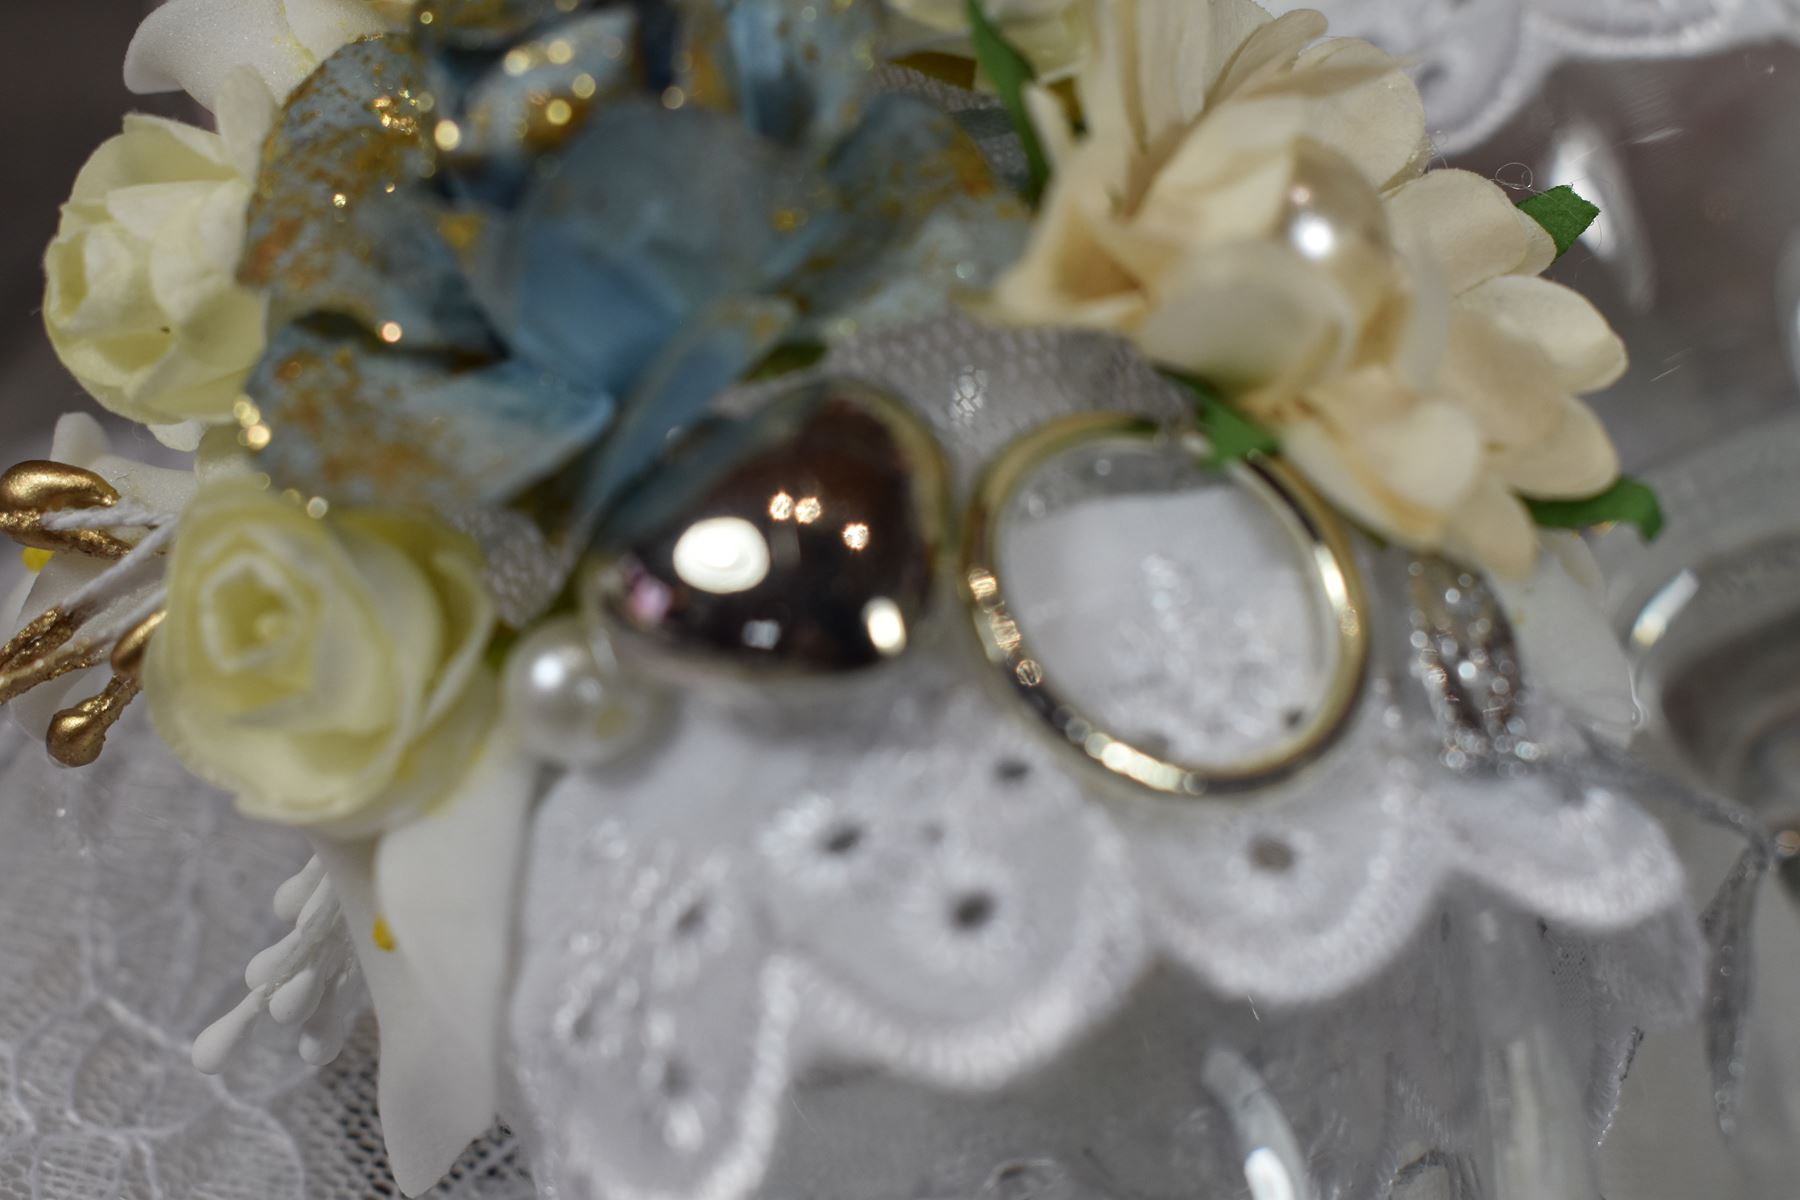 mariage-diy-decoration-art-de-la-table-petit-budget-faire-soi-même-coupe-champagne-fleurie